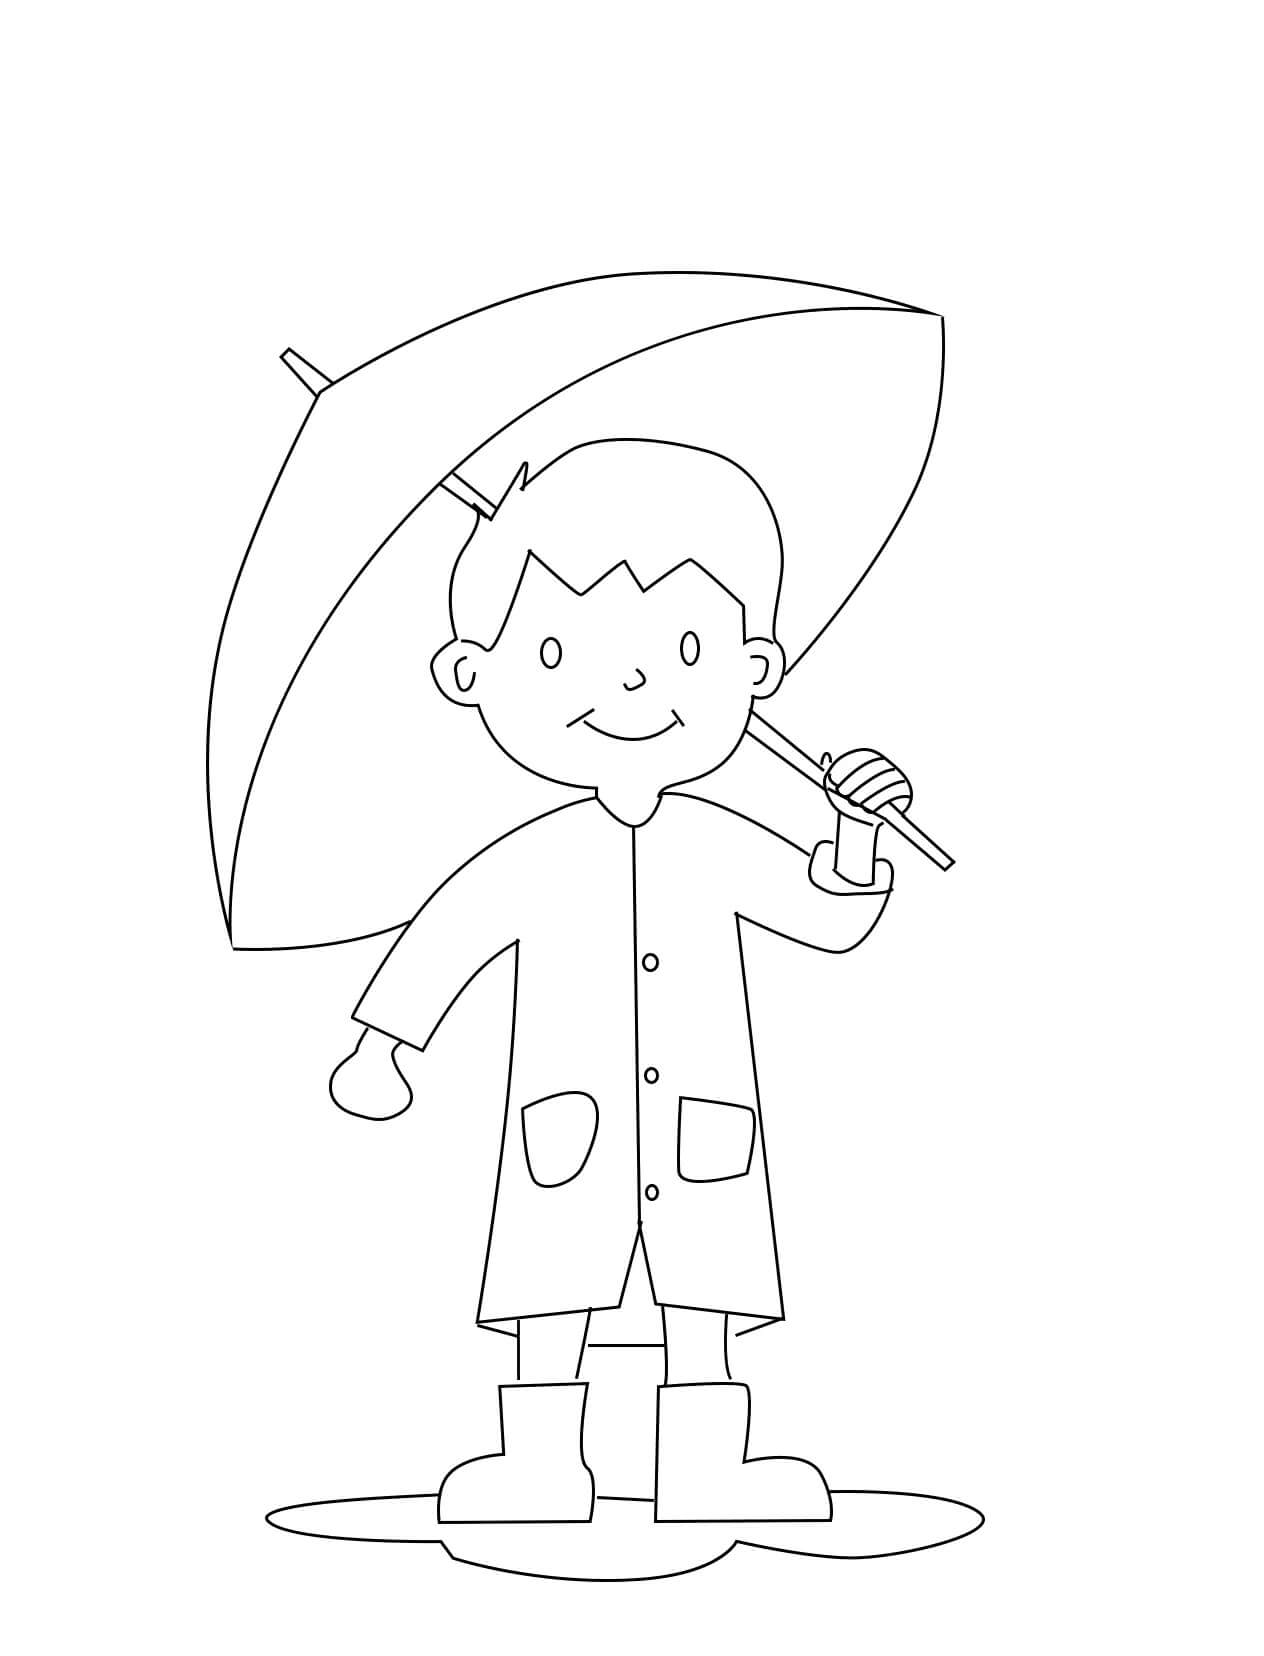 소년이 우산을 들고 있다 coloring page